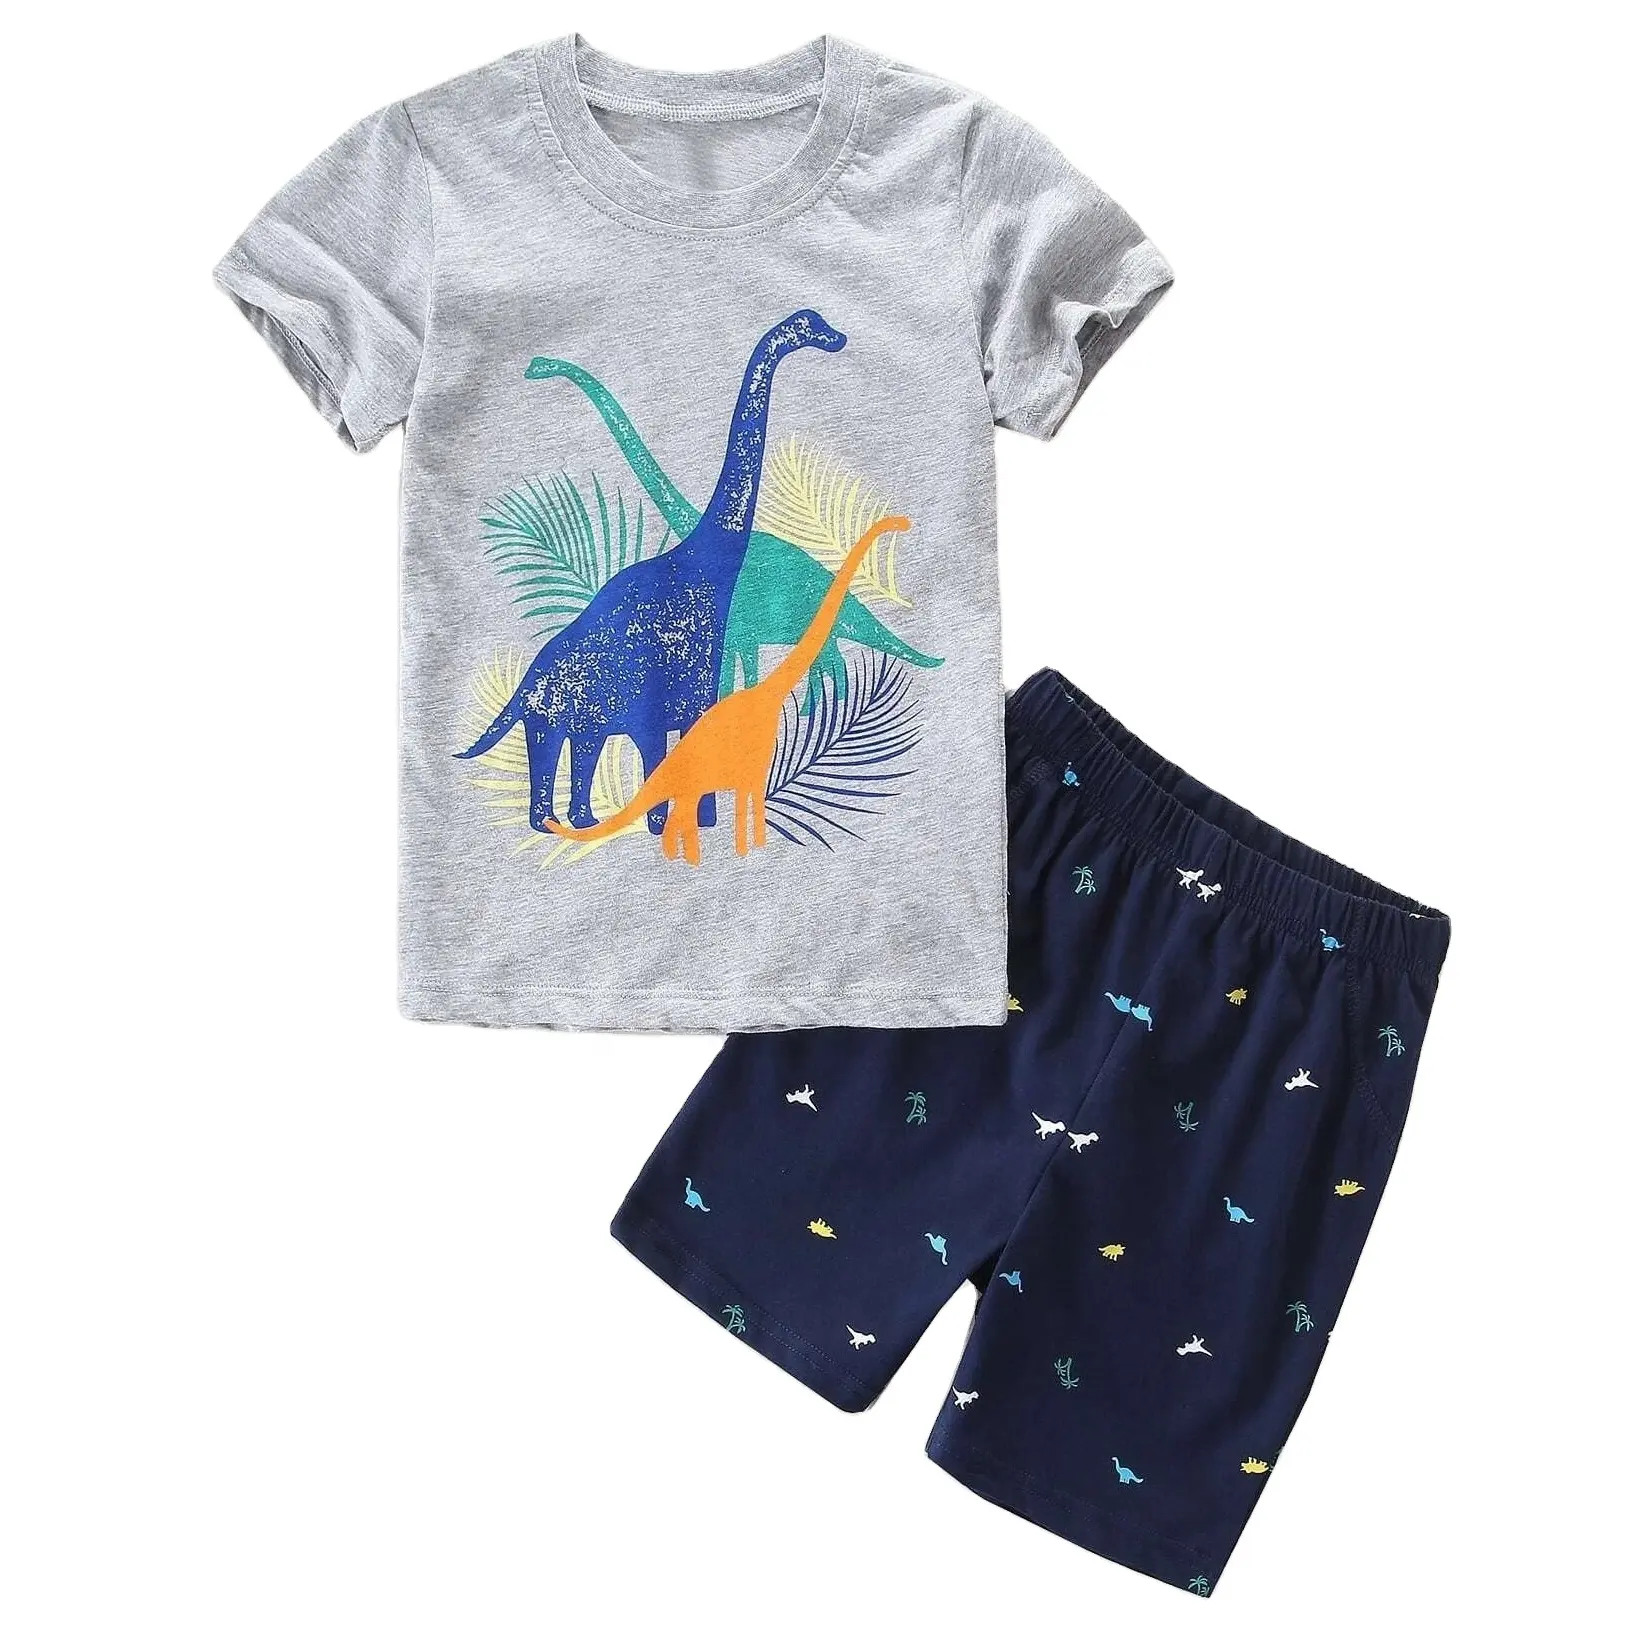 Ensemble de vêtements pour enfants,, avec motifs imprimés, personnalisé, étiquette privée, tenue décontractée pour bébés garçons, pour l'été